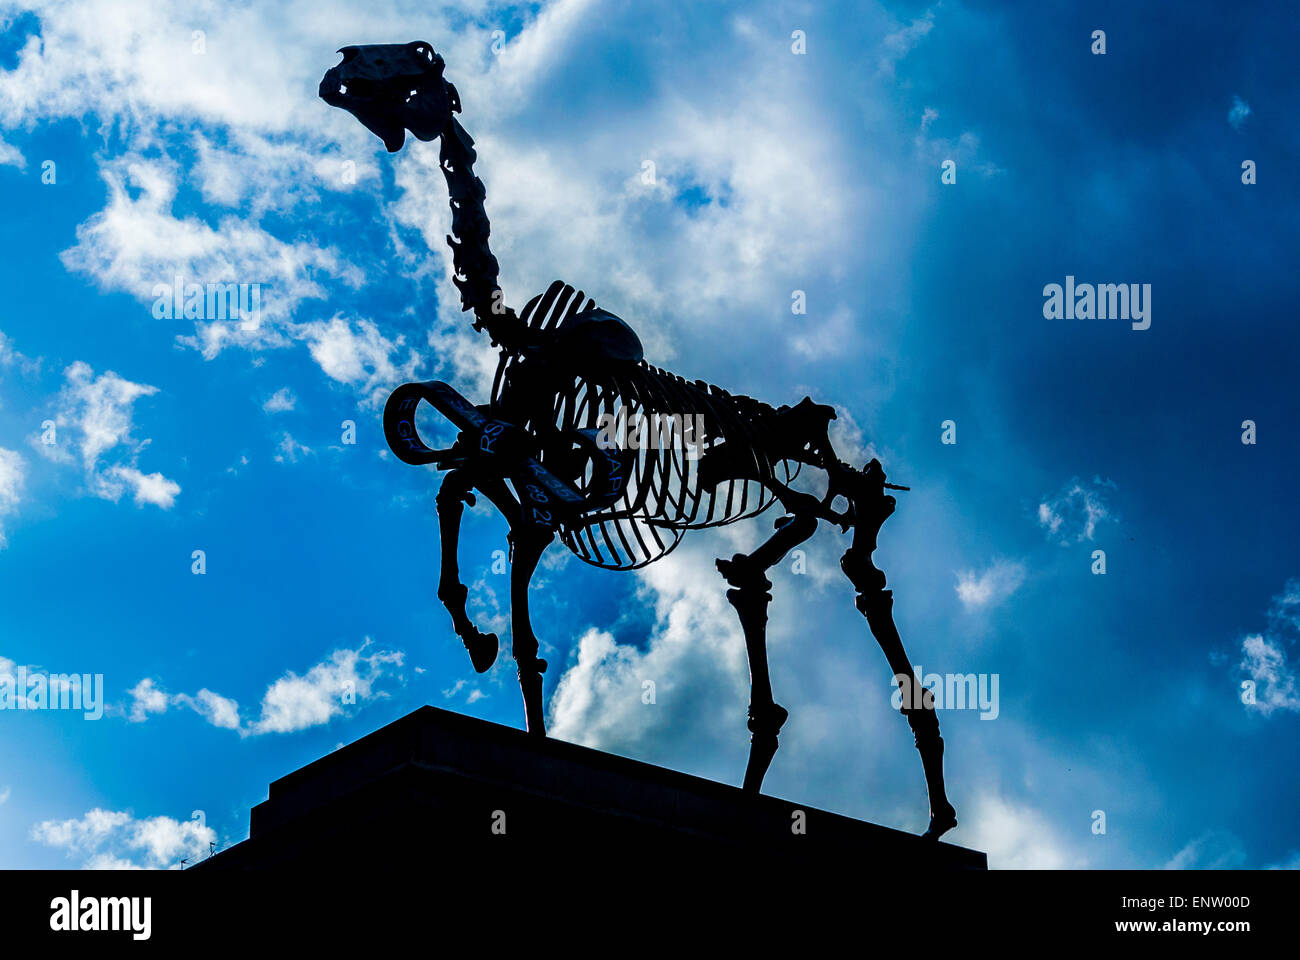 Cheval cadeau de l'artiste Hans Haacke sur le quatrième Socle, Trafalgar Square, Londres, Royaume-Uni. Banque D'Images